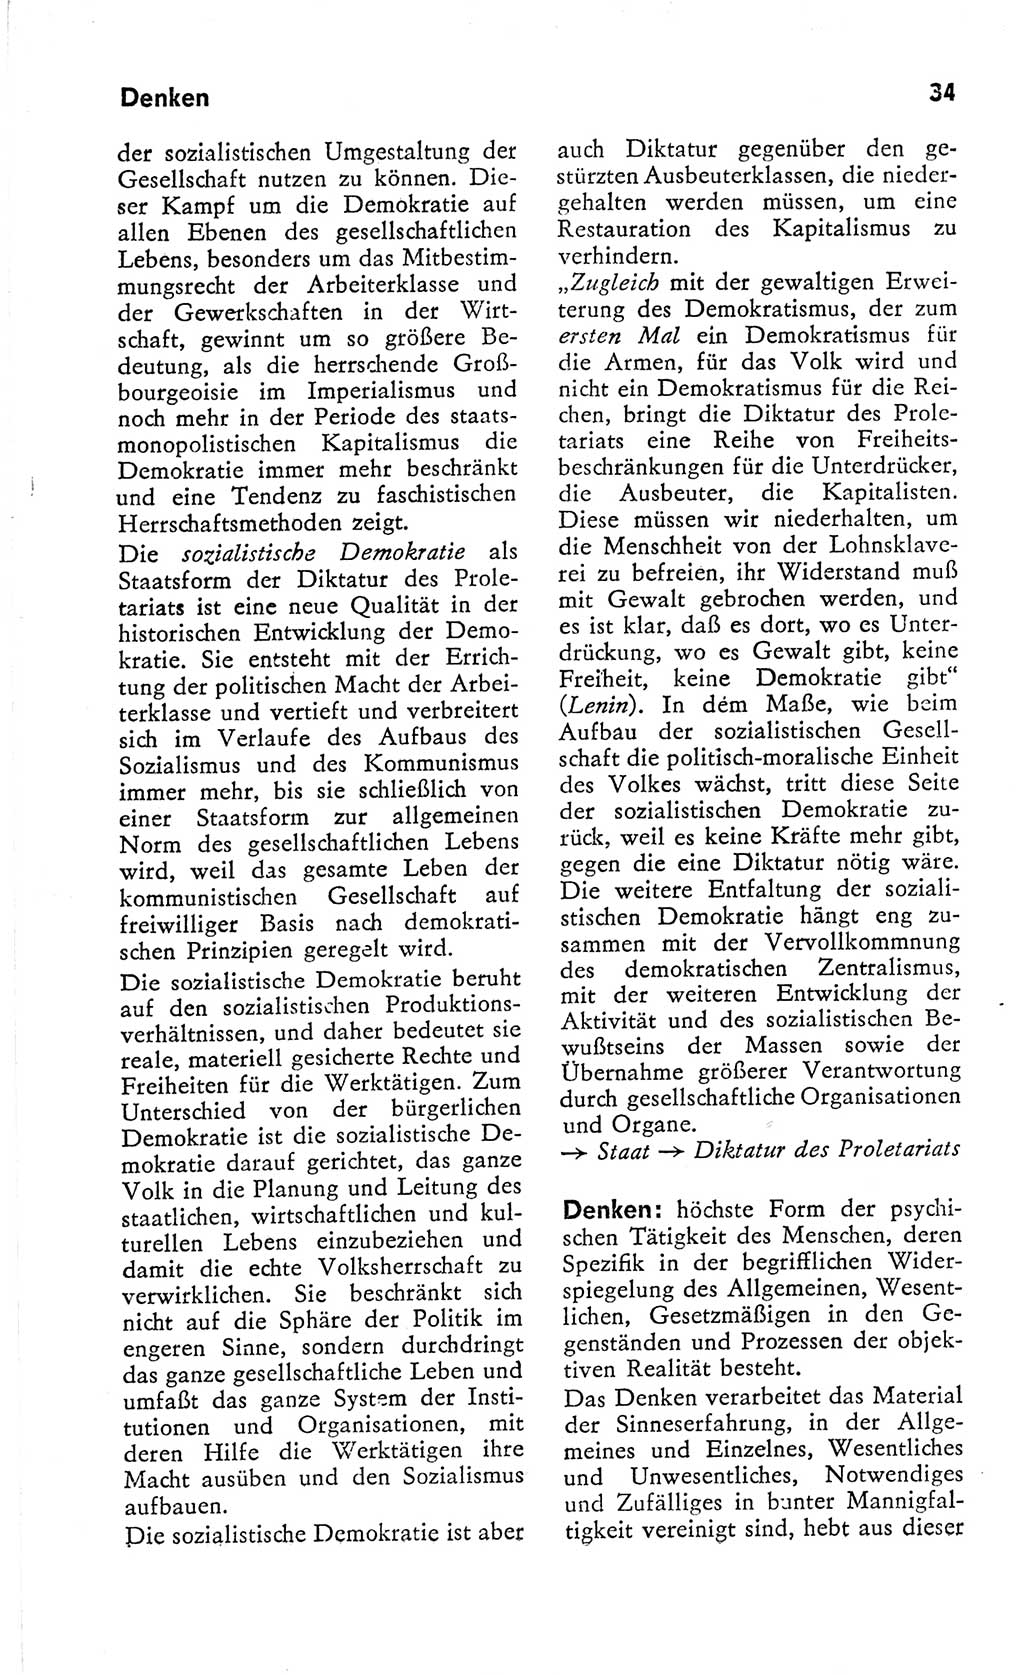 Kleines Wörterbuch der marxistisch-leninistischen Philosophie [Deutsche Demokratische Republik (DDR)] 1966, Seite 34 (Kl. Wb. ML Phil. DDR 1966, S. 34)